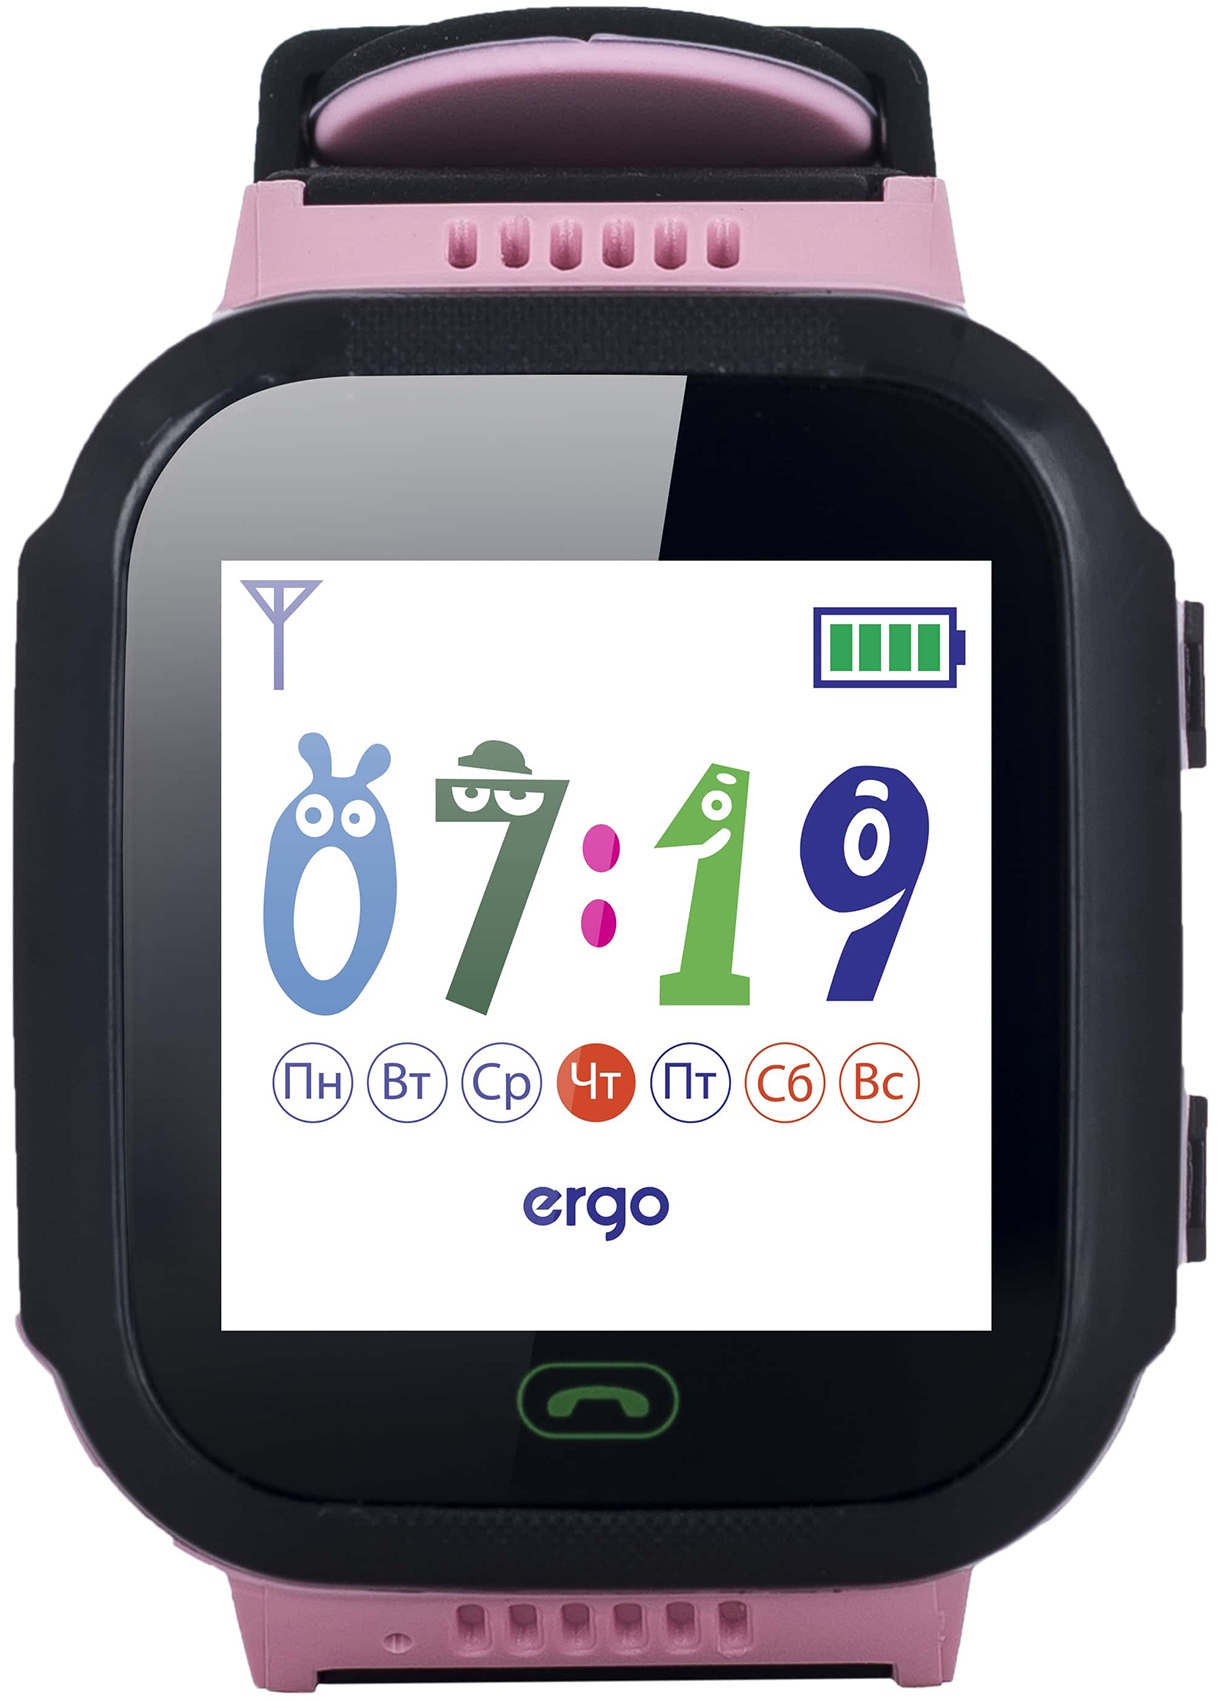 Детские часы ERGO J020 GPS Tracker Pink (GPSJ020P) в Киеве